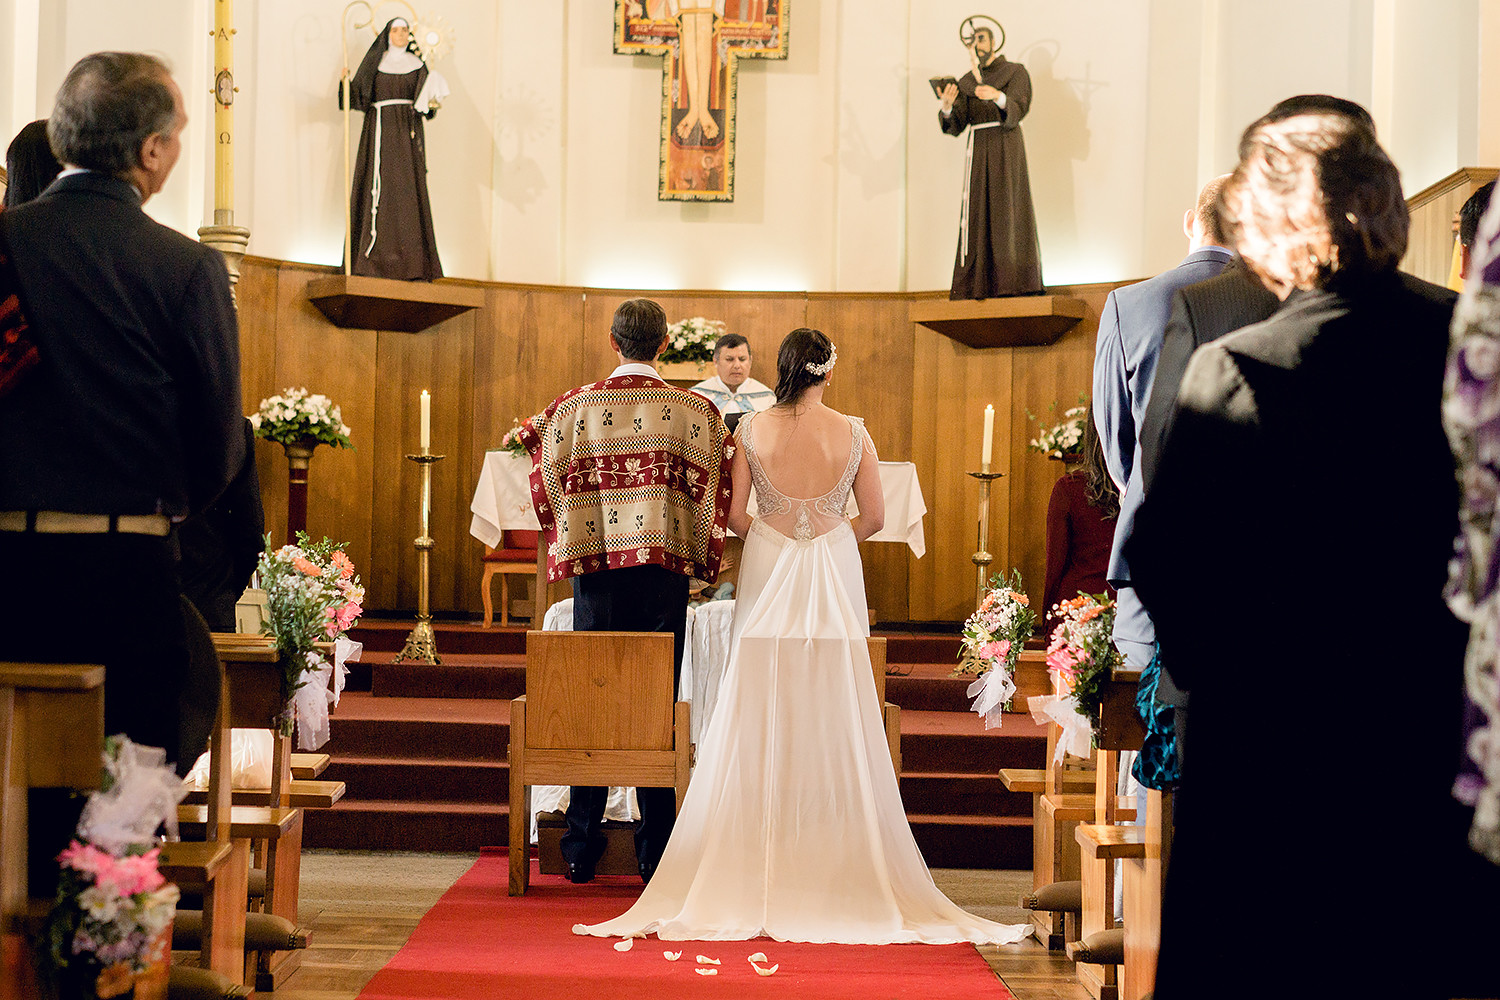 pareja de novios en casamiento tradicional chileno en la iglesia, el novio lleva una tradicional ropa de huaso y la novia un vestido imperio con espalda escotada y cola de chiffon